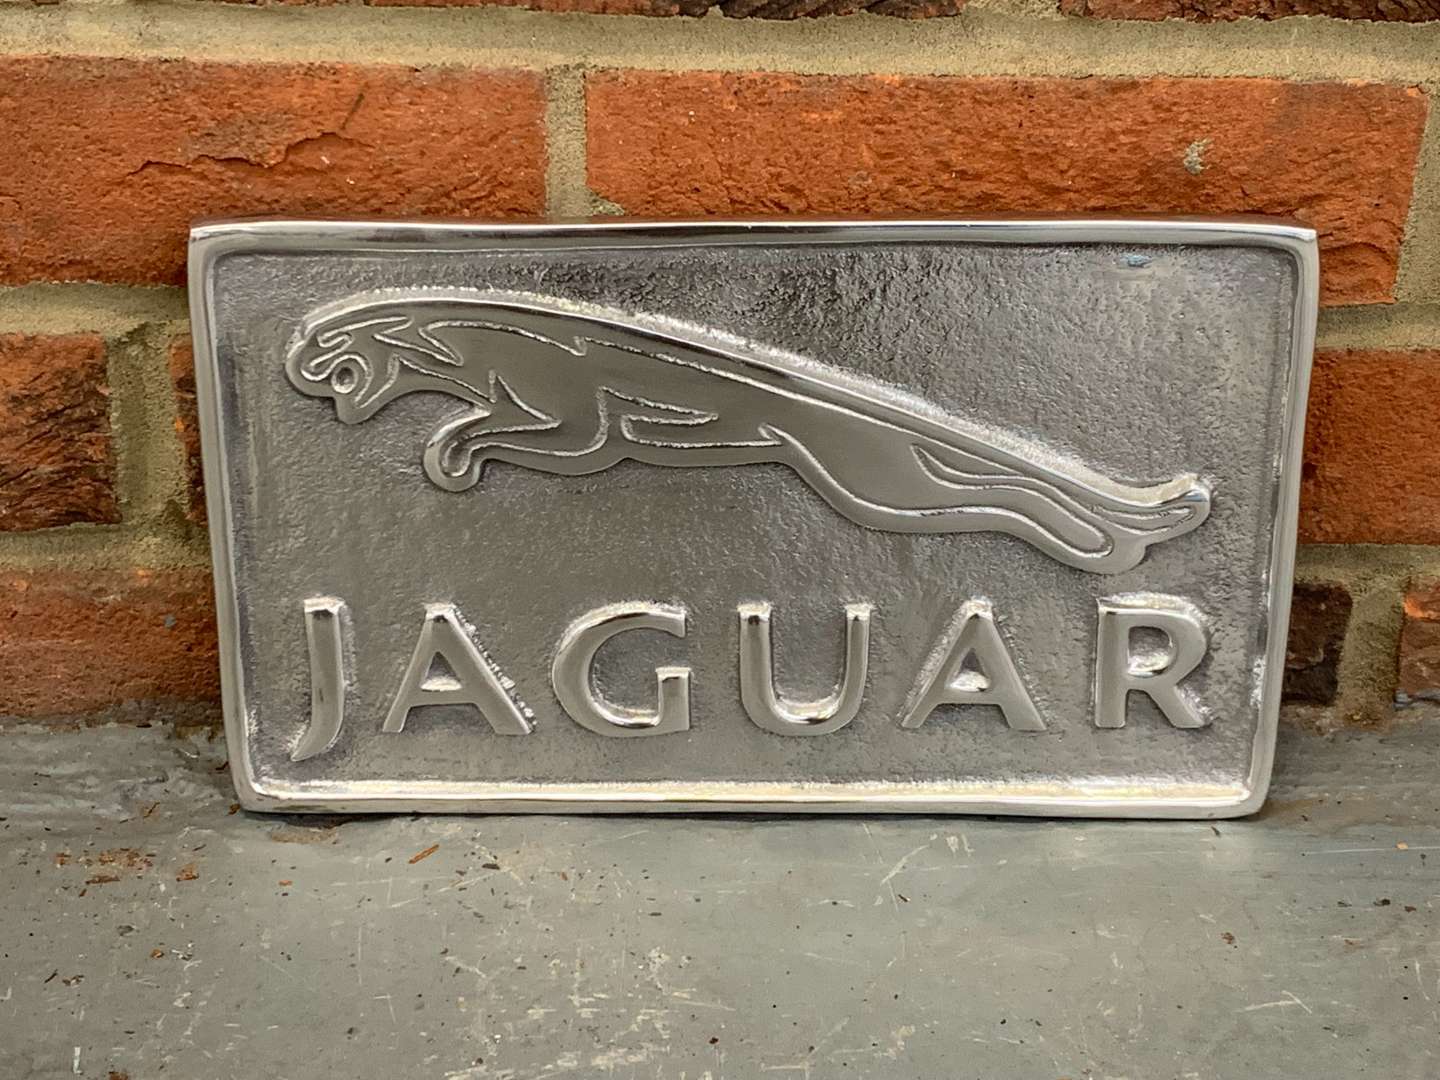 <p>Cast Aluminium Jaguar Sign</p>